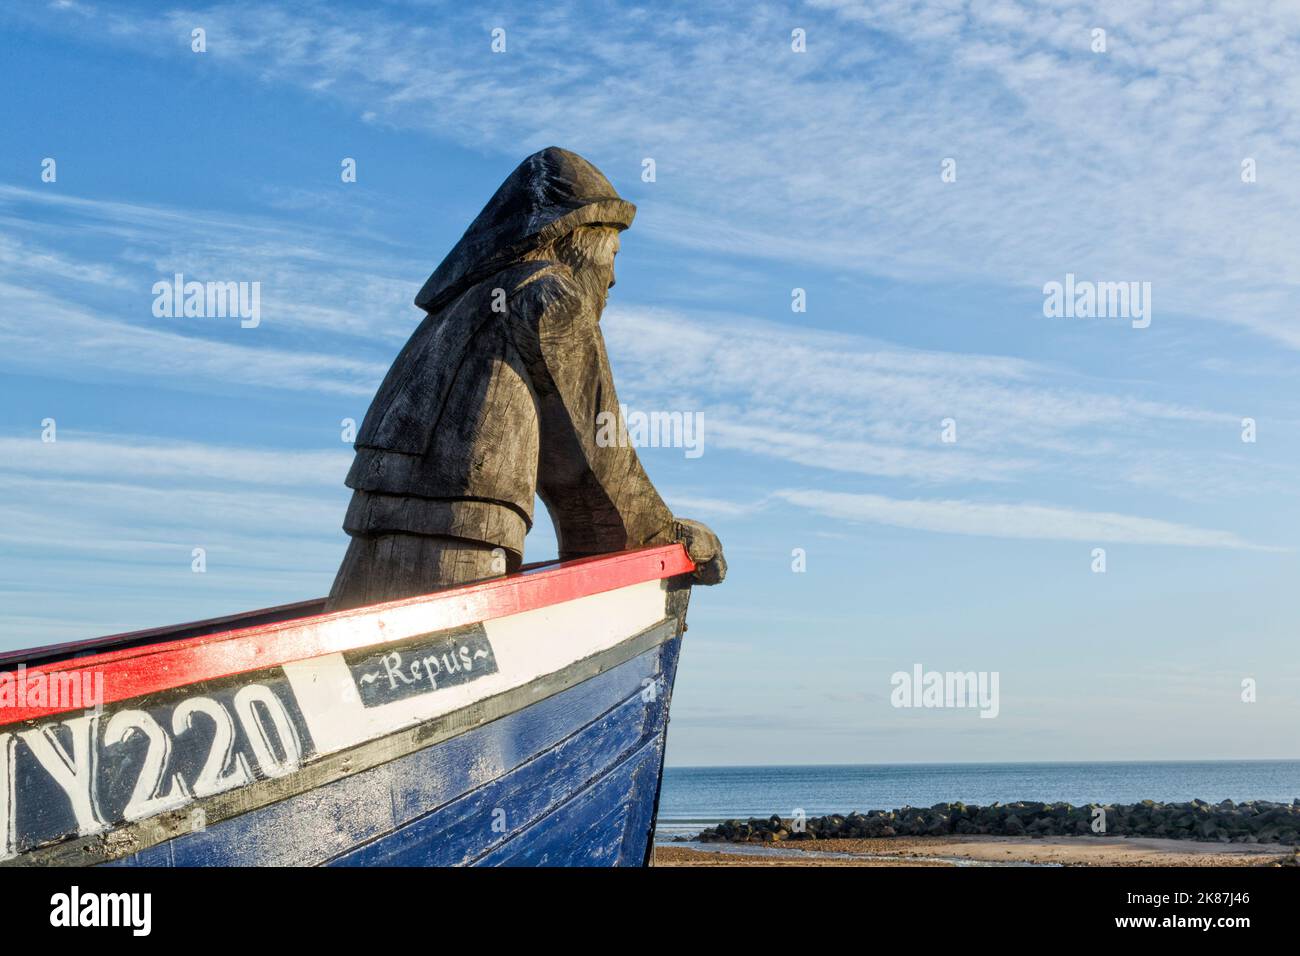 Le bateau Repus à Skinningrove. Un bateau de pêche ouvert restauré et équipé d'un pêcheur sculpté à la tronçonneuse à l'arc. Mémorial aux pêcheurs locaux Banque D'Images